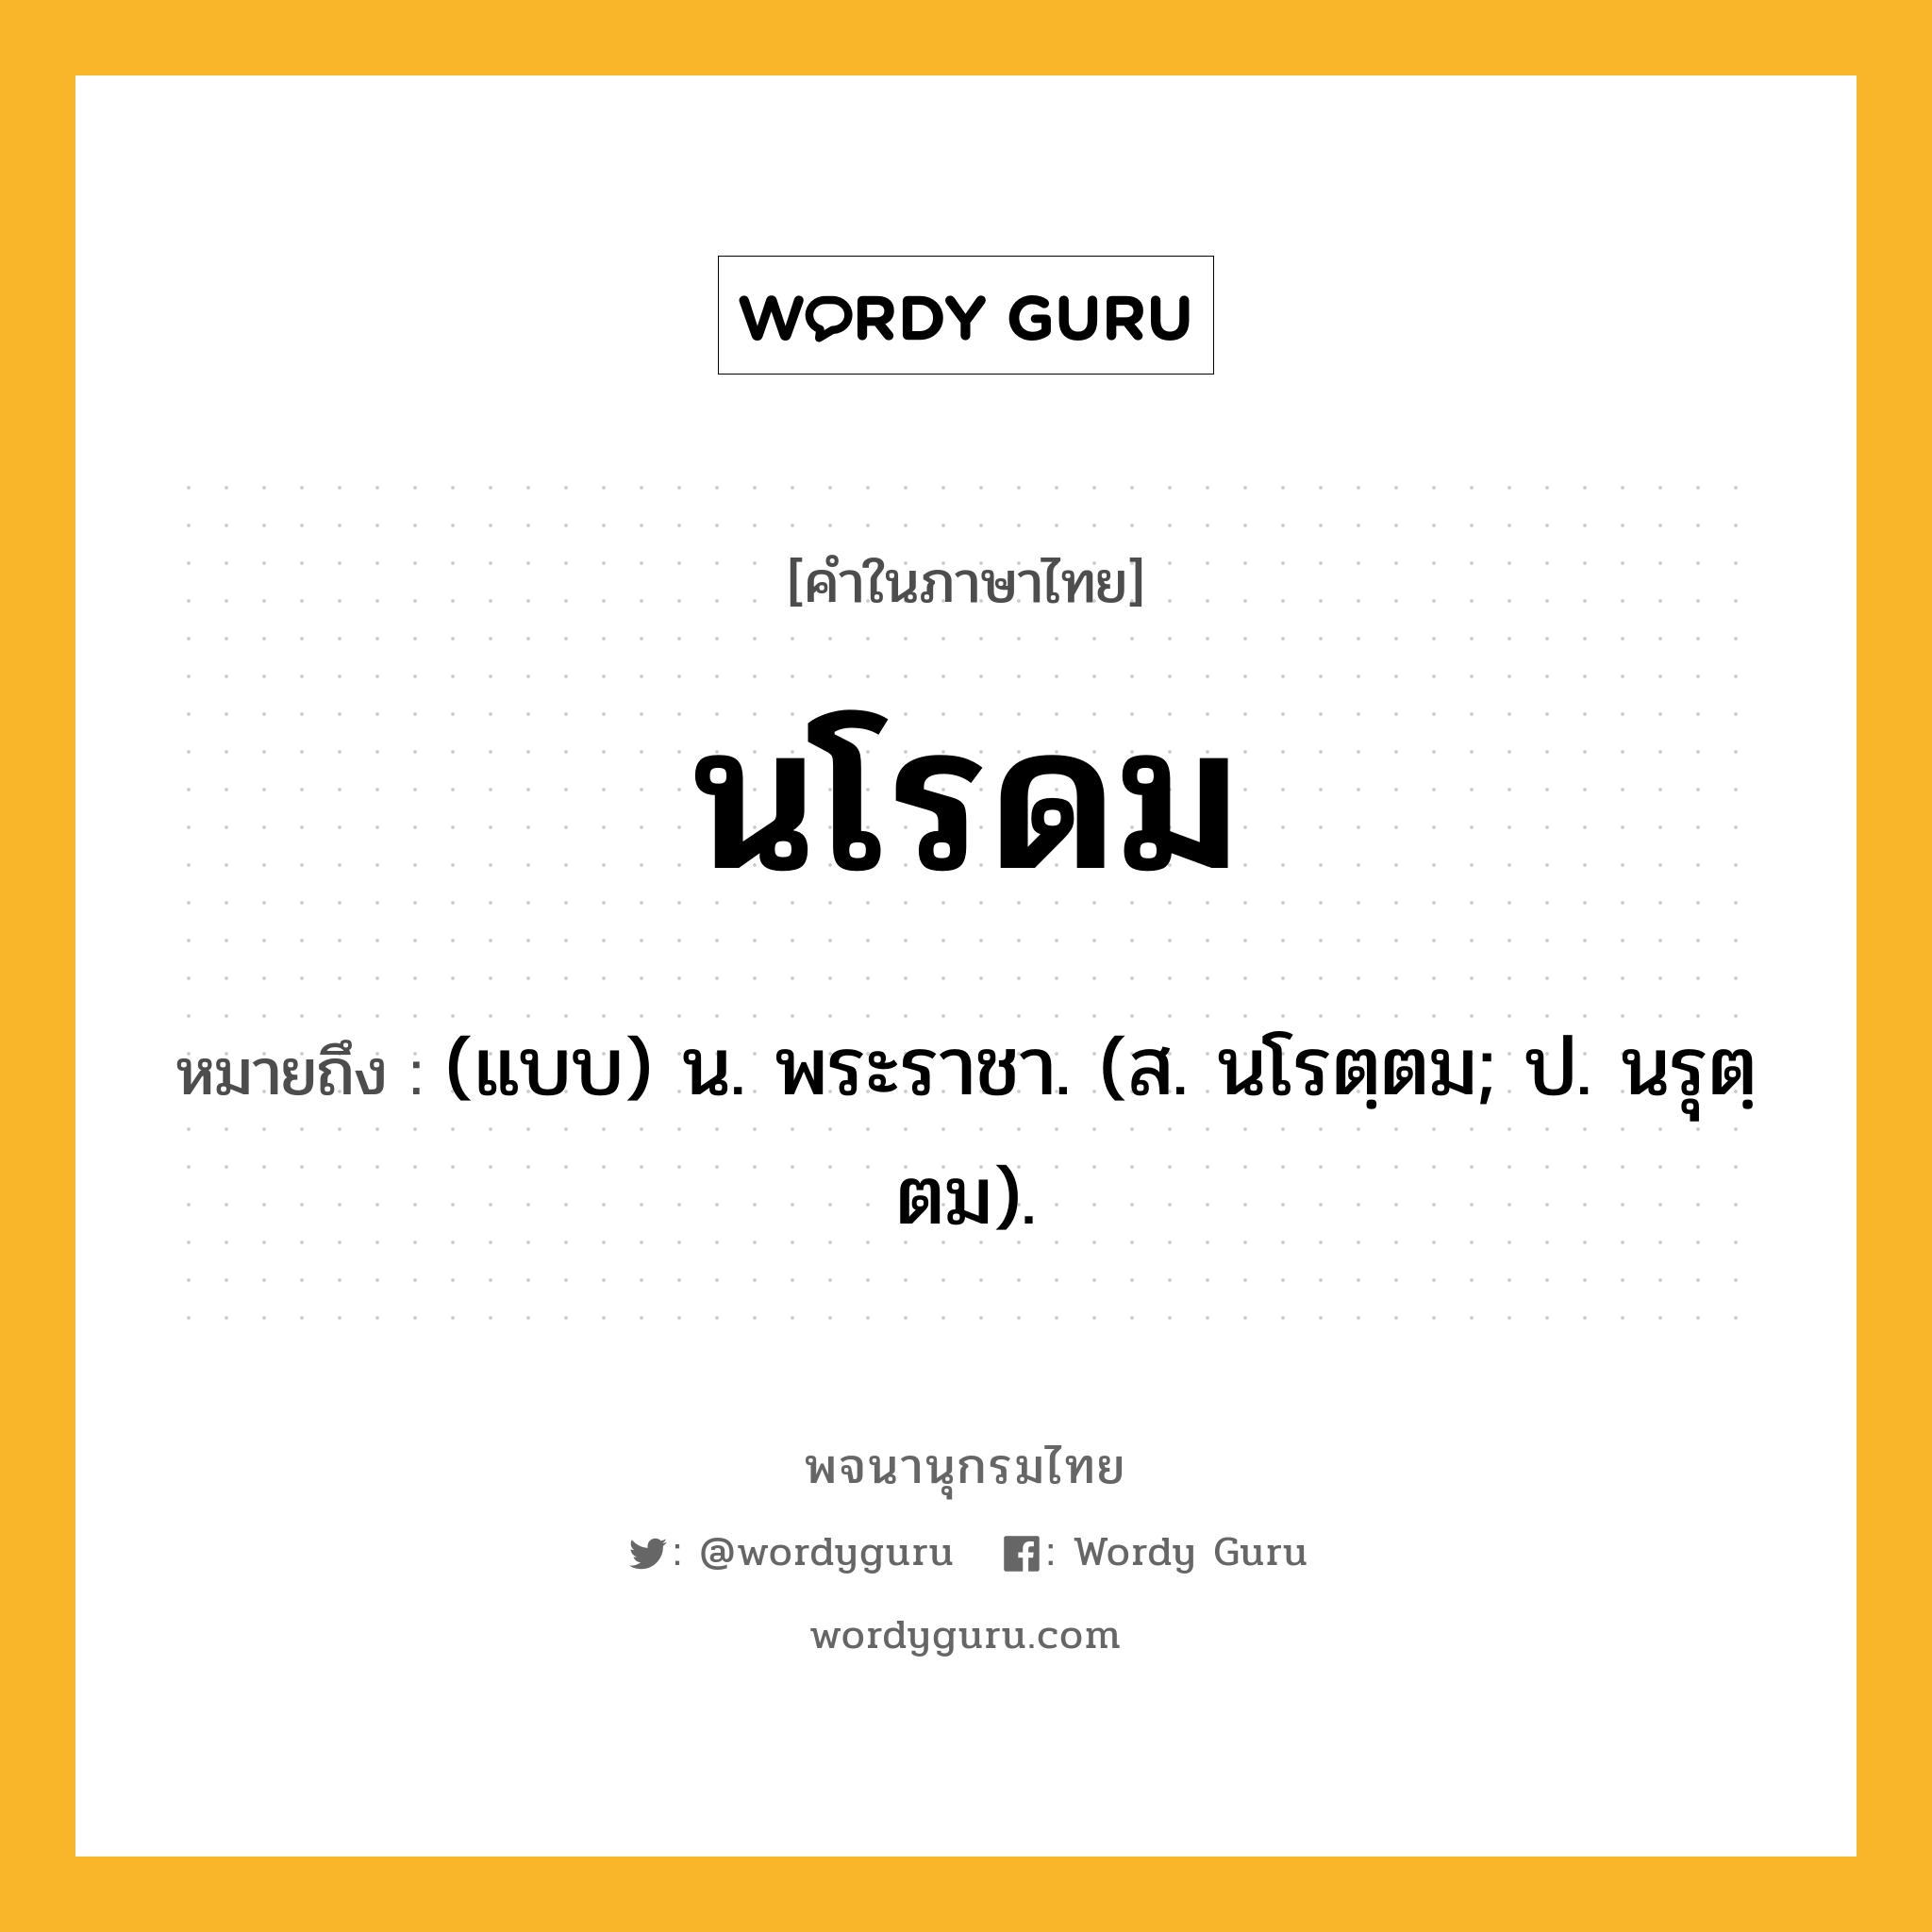 นโรดม หมายถึงอะไร?, คำในภาษาไทย นโรดม หมายถึง (แบบ) น. พระราชา. (ส. นโรตฺตม; ป. นรุตฺตม).